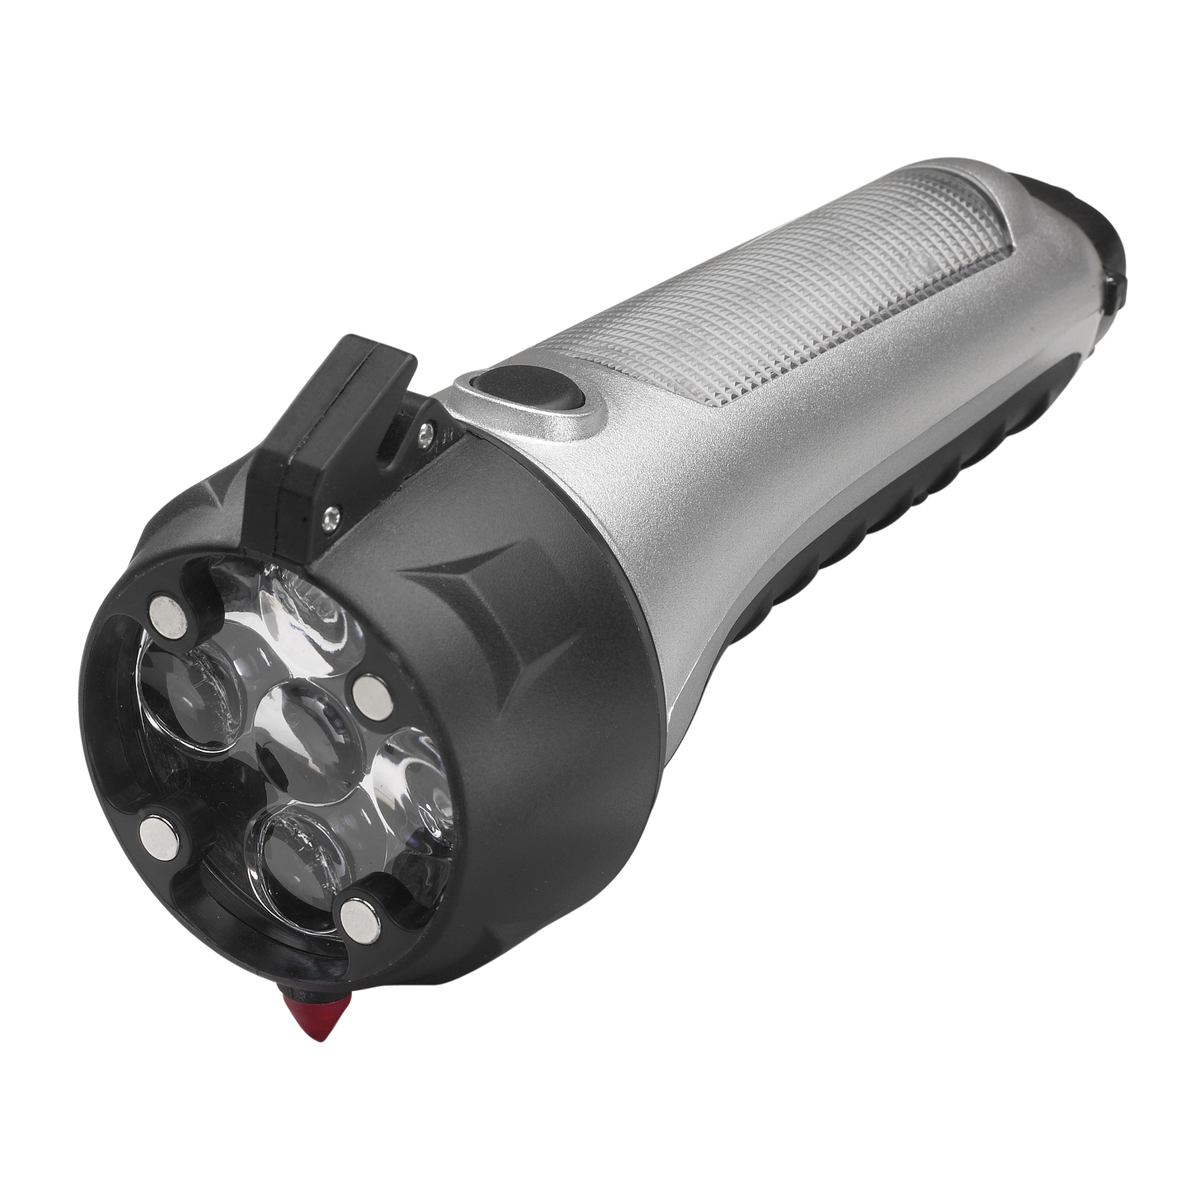 LM Taschenlampe mit Notfallwerkzeug REFLECTS-STOCKTON schwarz, silber